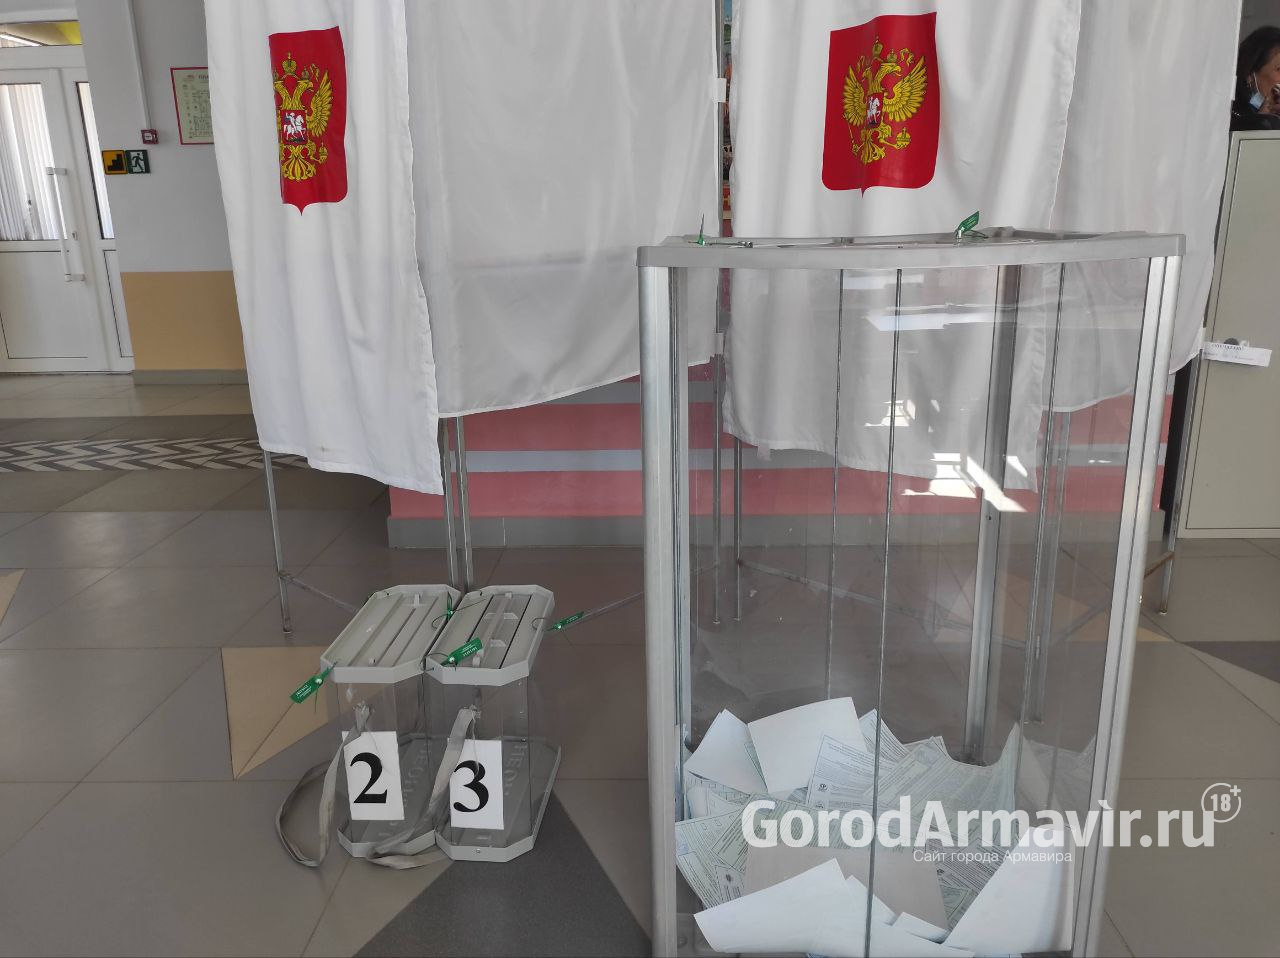 В Армавире большее число голосов избирателей набрали Сергей Жуков и Тамерлан Казаков 